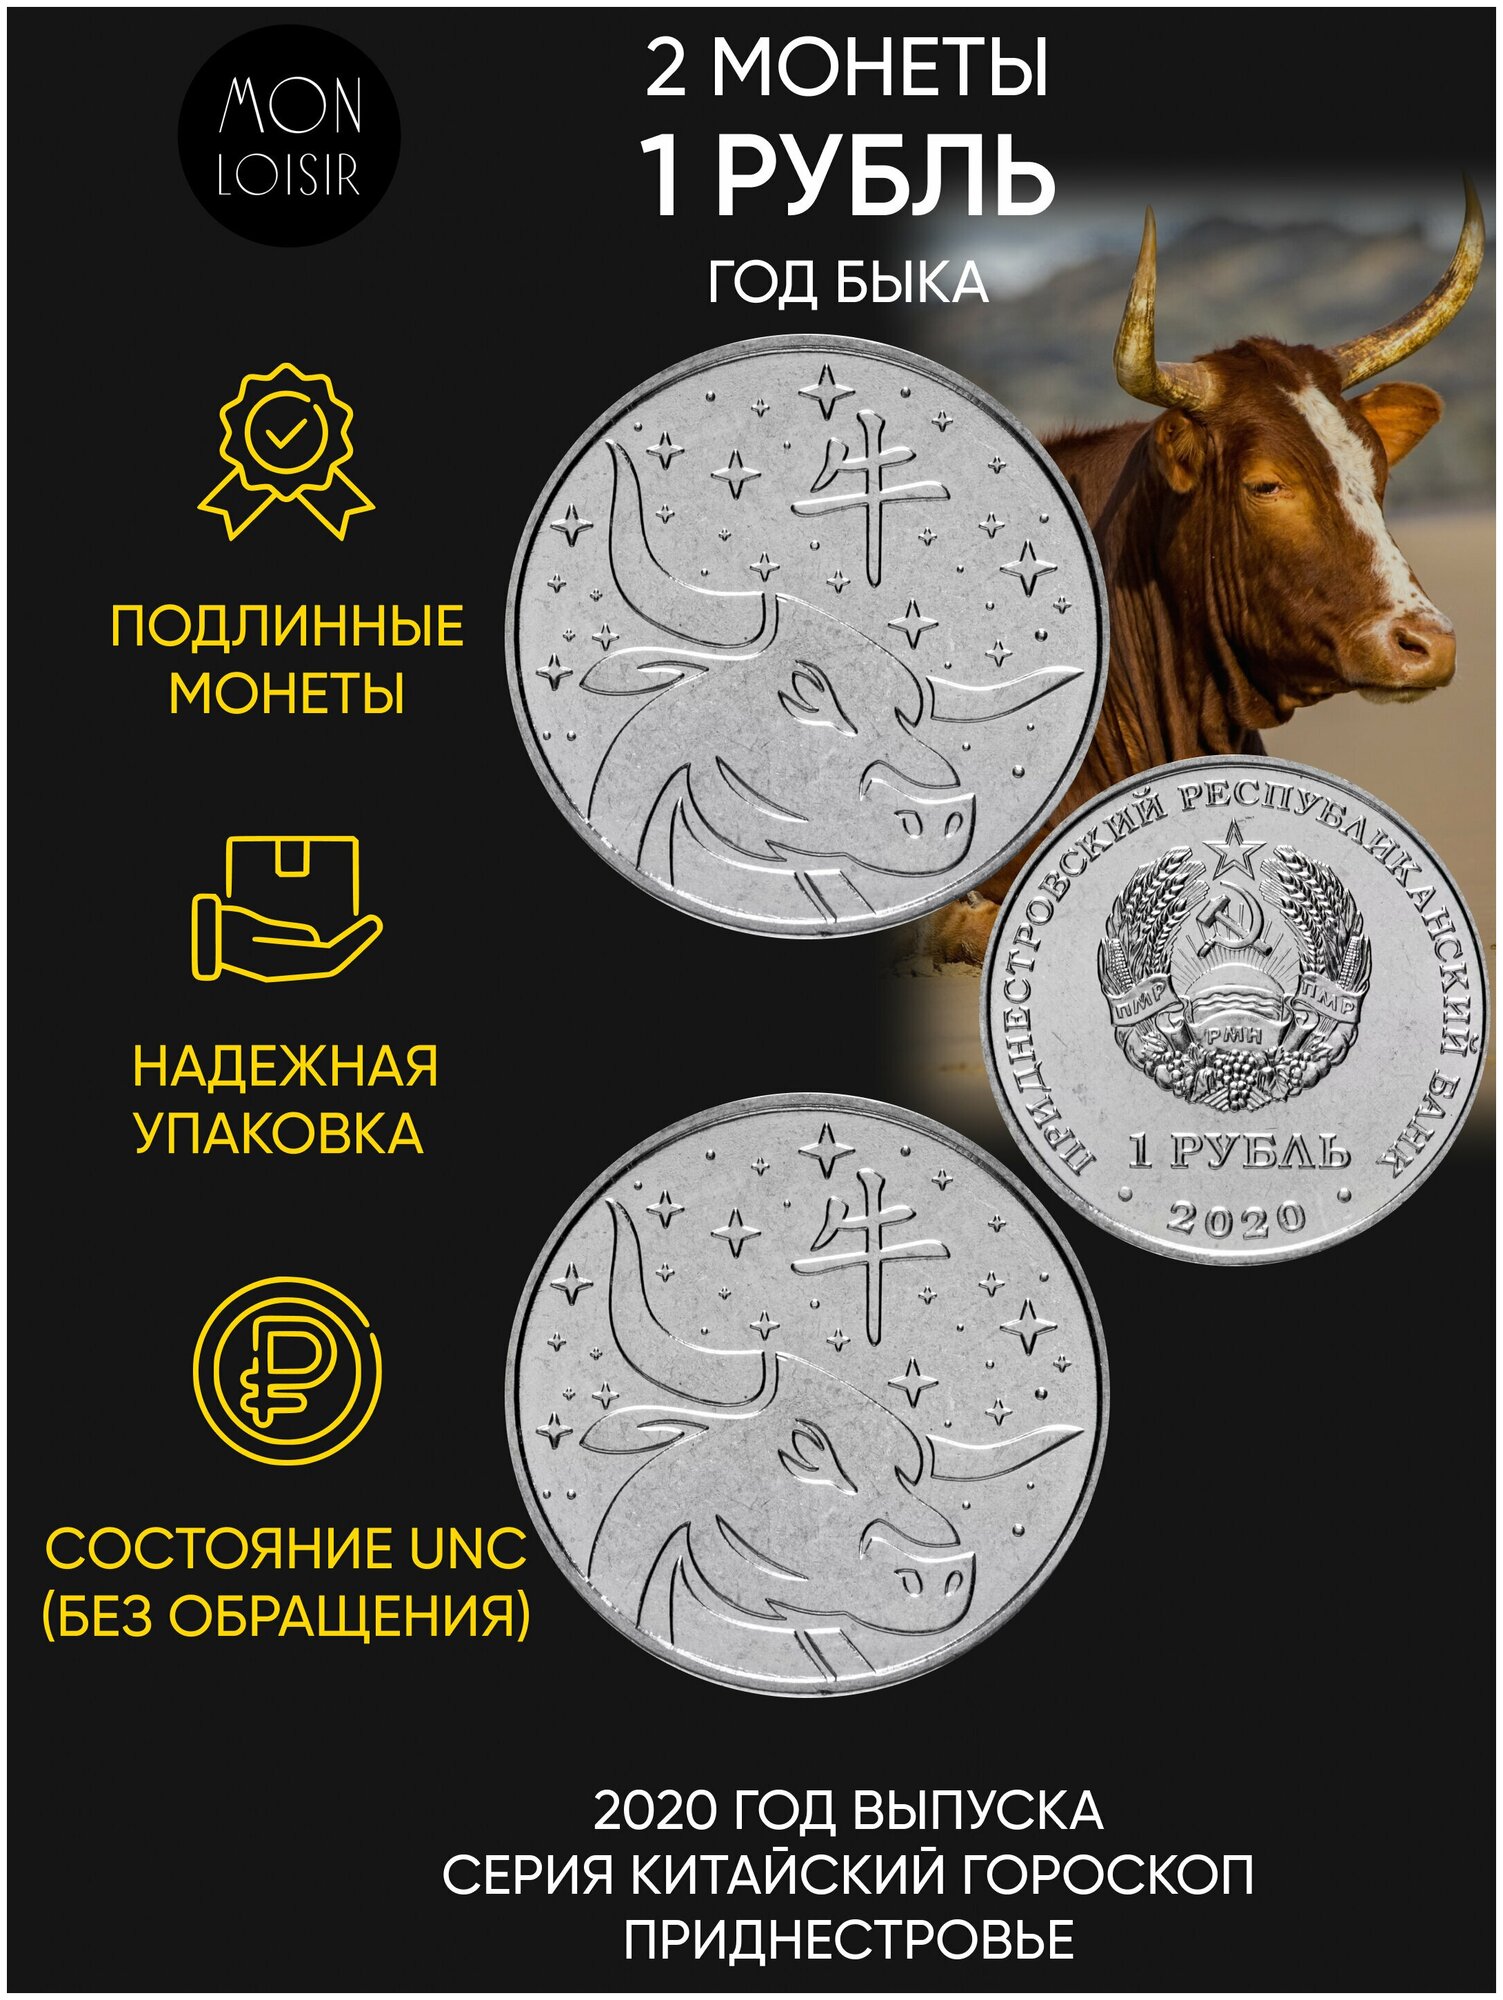 Подарочный набор из 2-х монет номиналом 1 рубль. " Год быка-китайский гороскоп". Приднестровье, 2020 г. в. Состояние UNC (из мешка)